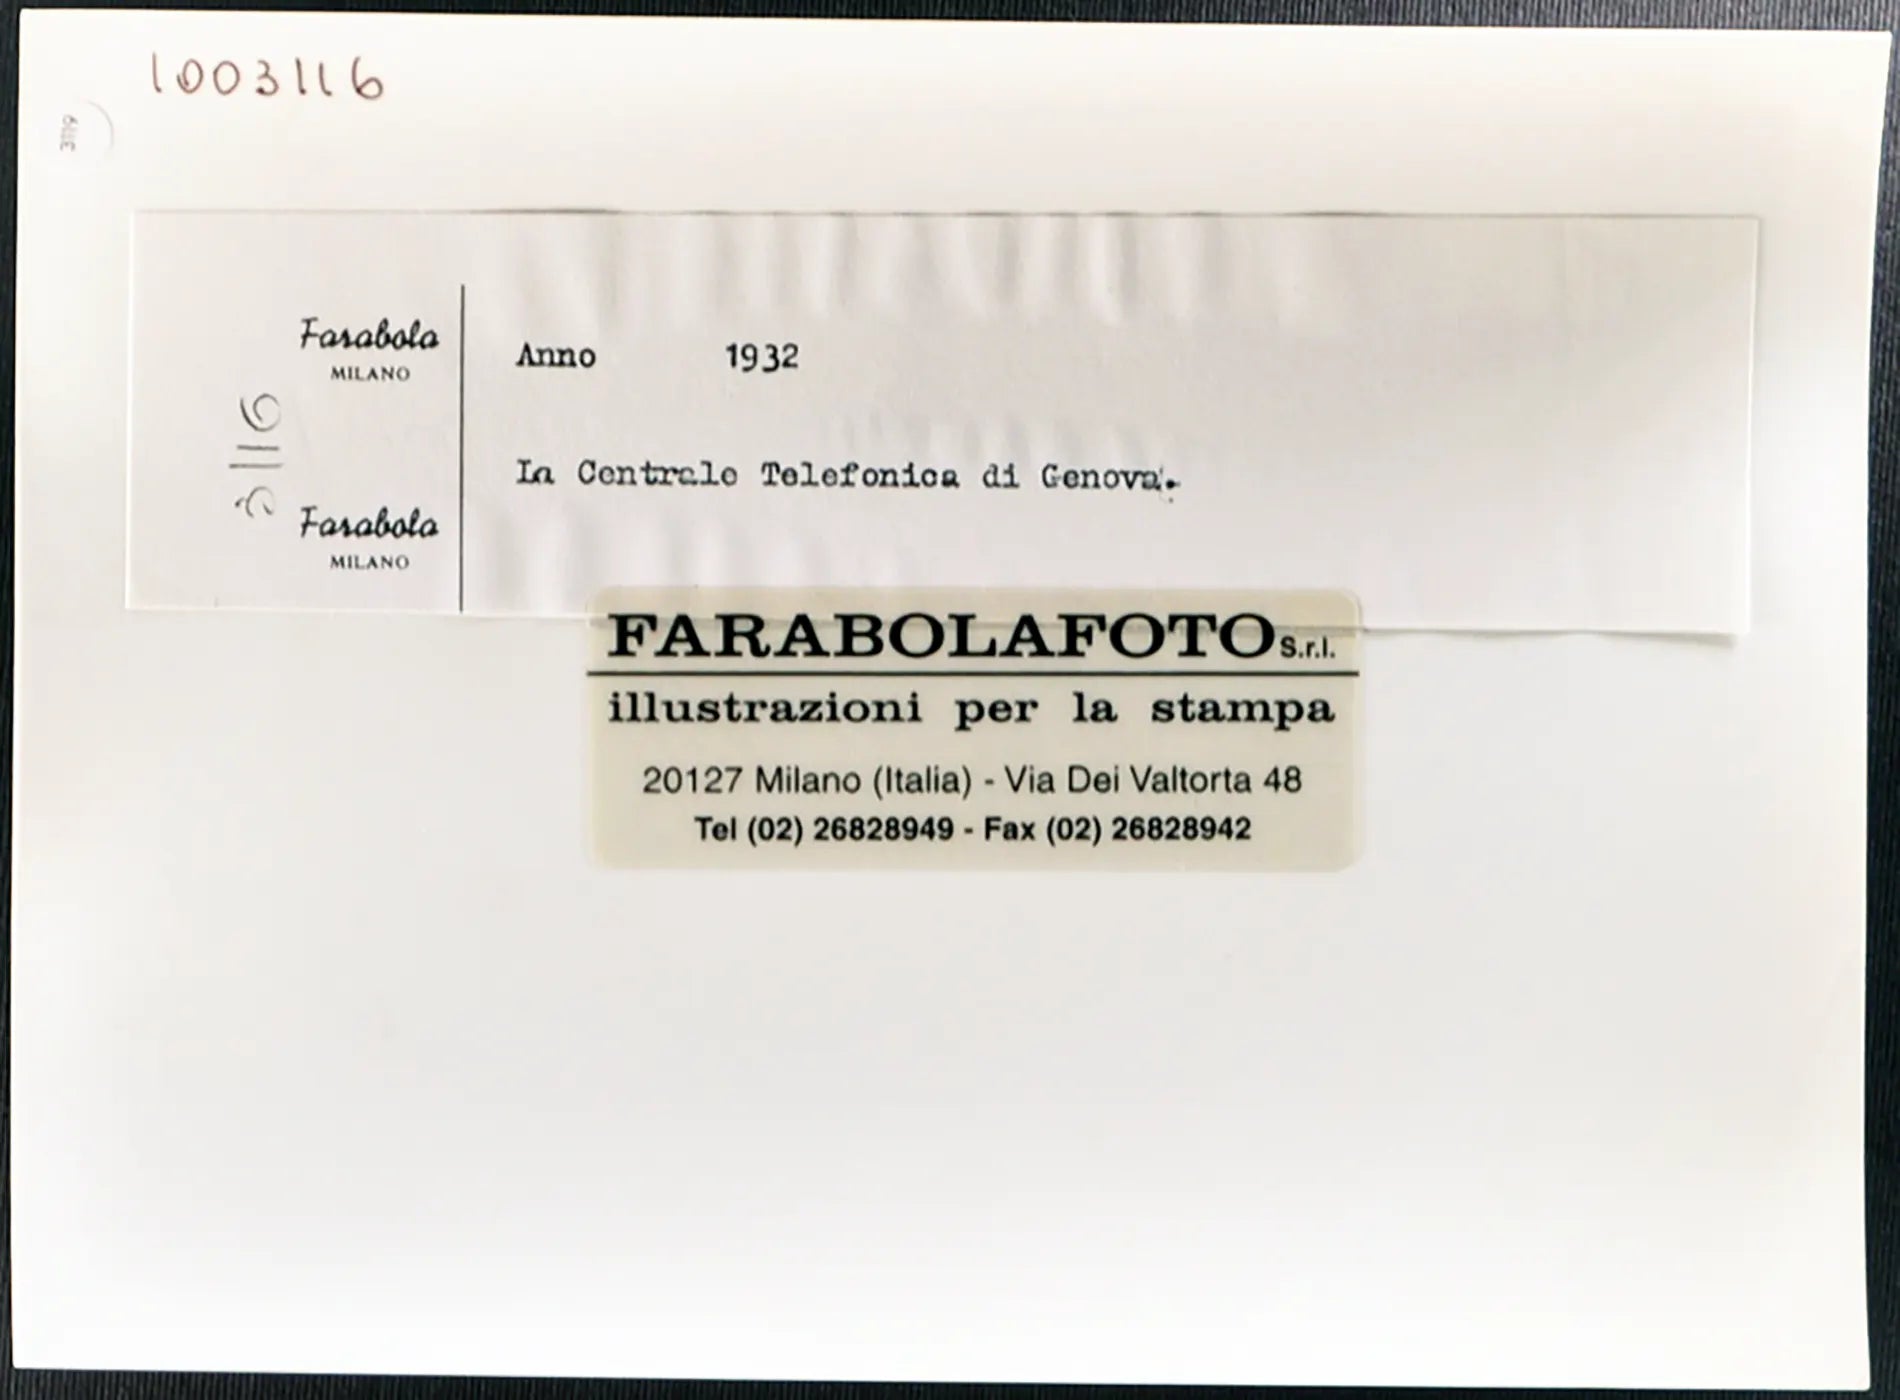 Centrale Telefonica a Genova 1932 Ft 3119 - Stampa 24x18 cm - Farabola Stampa ai sali d'argento (anni 90)